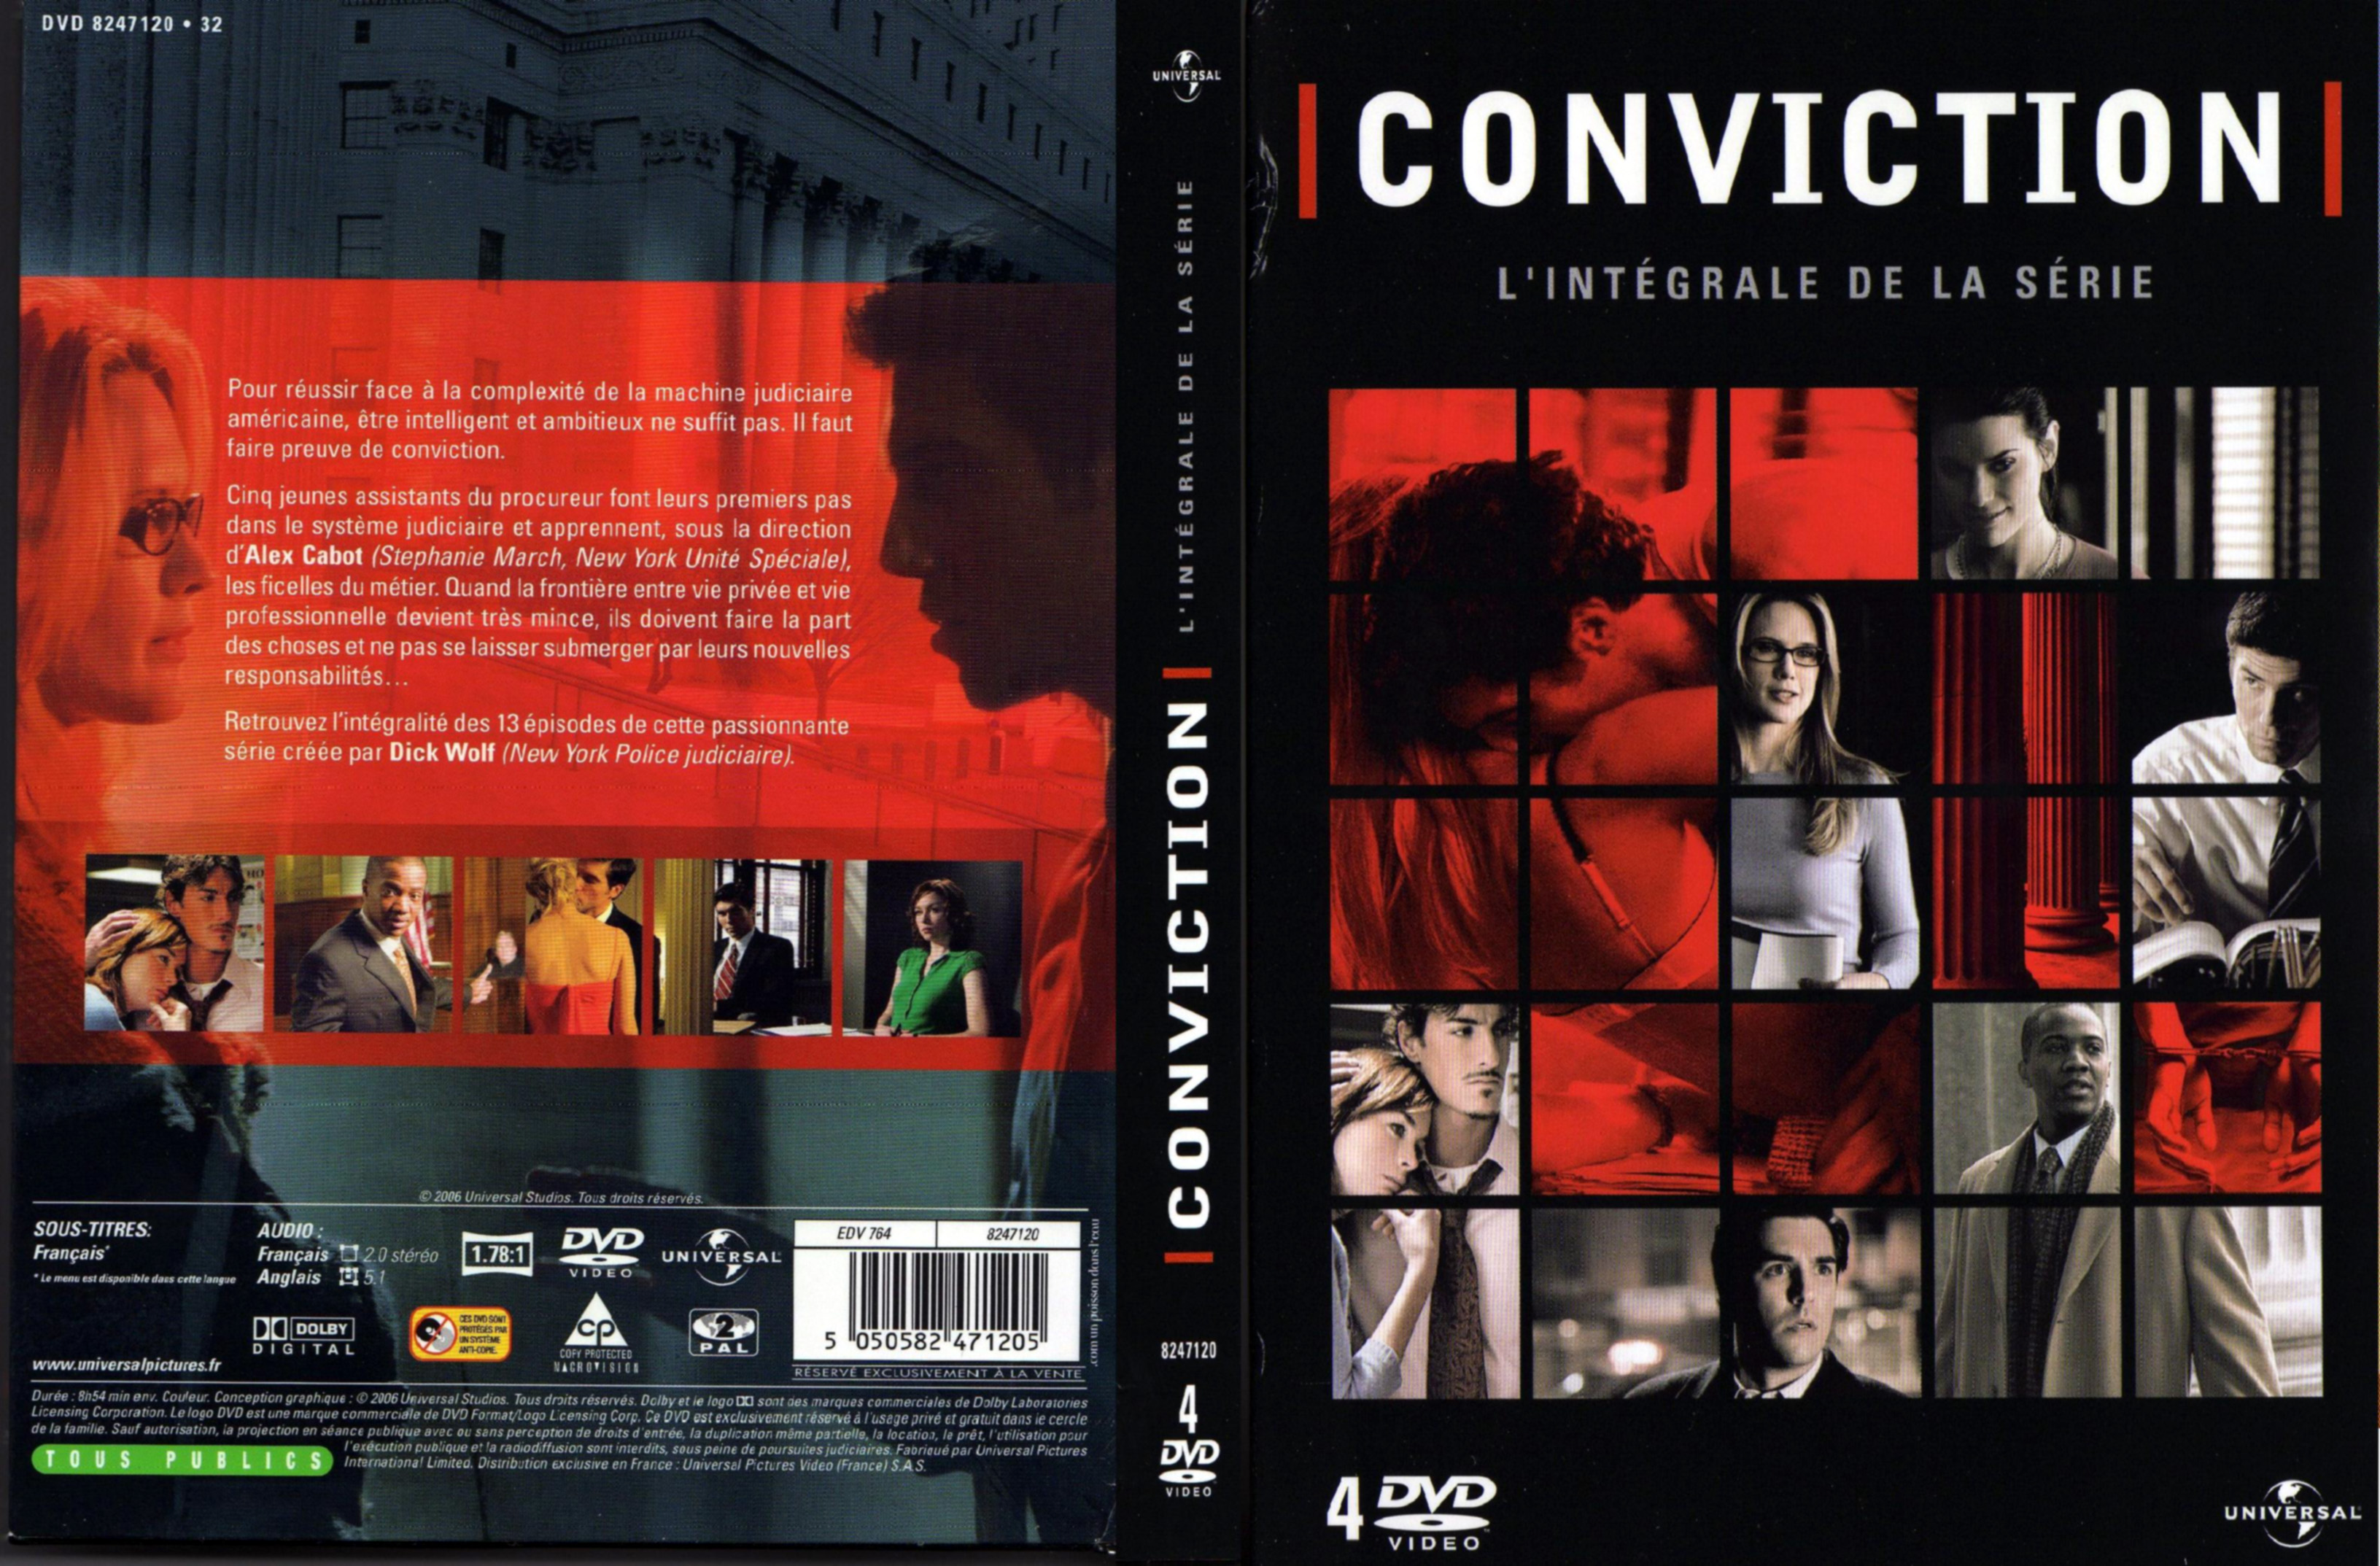 Jaquette DVD Conviction COFFRET